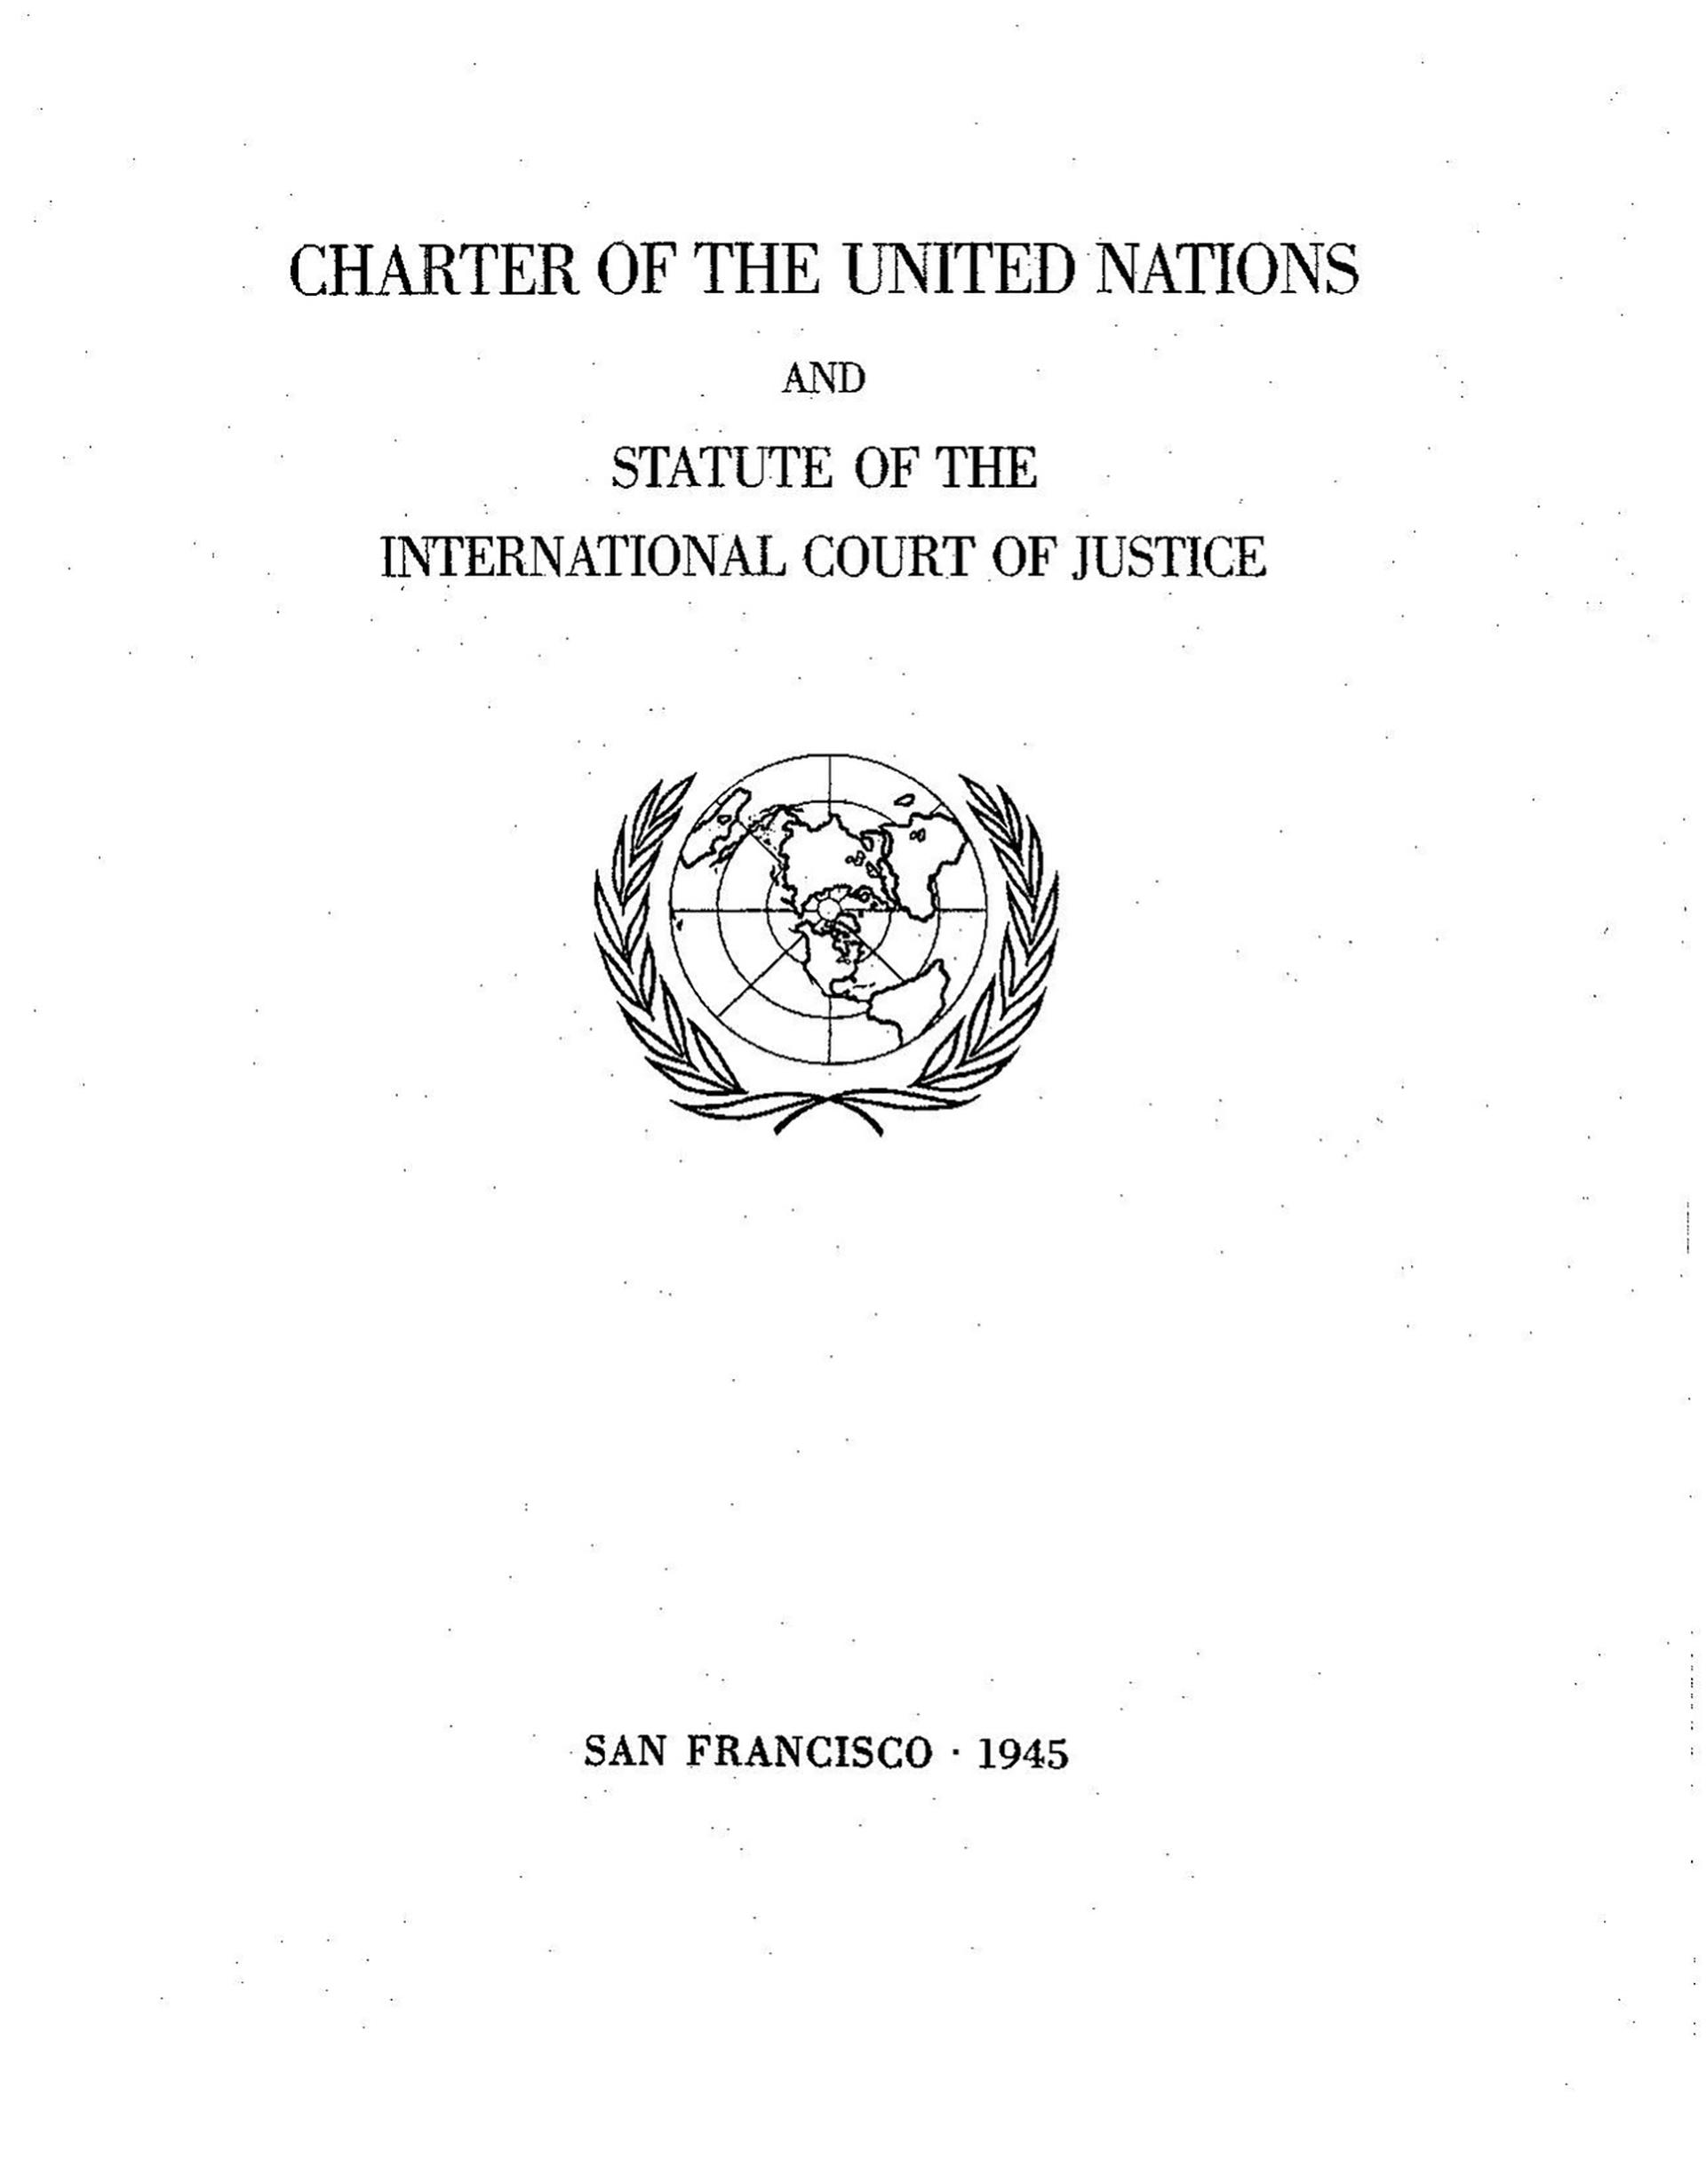 Portada de la Carta de las Naciones Unidas